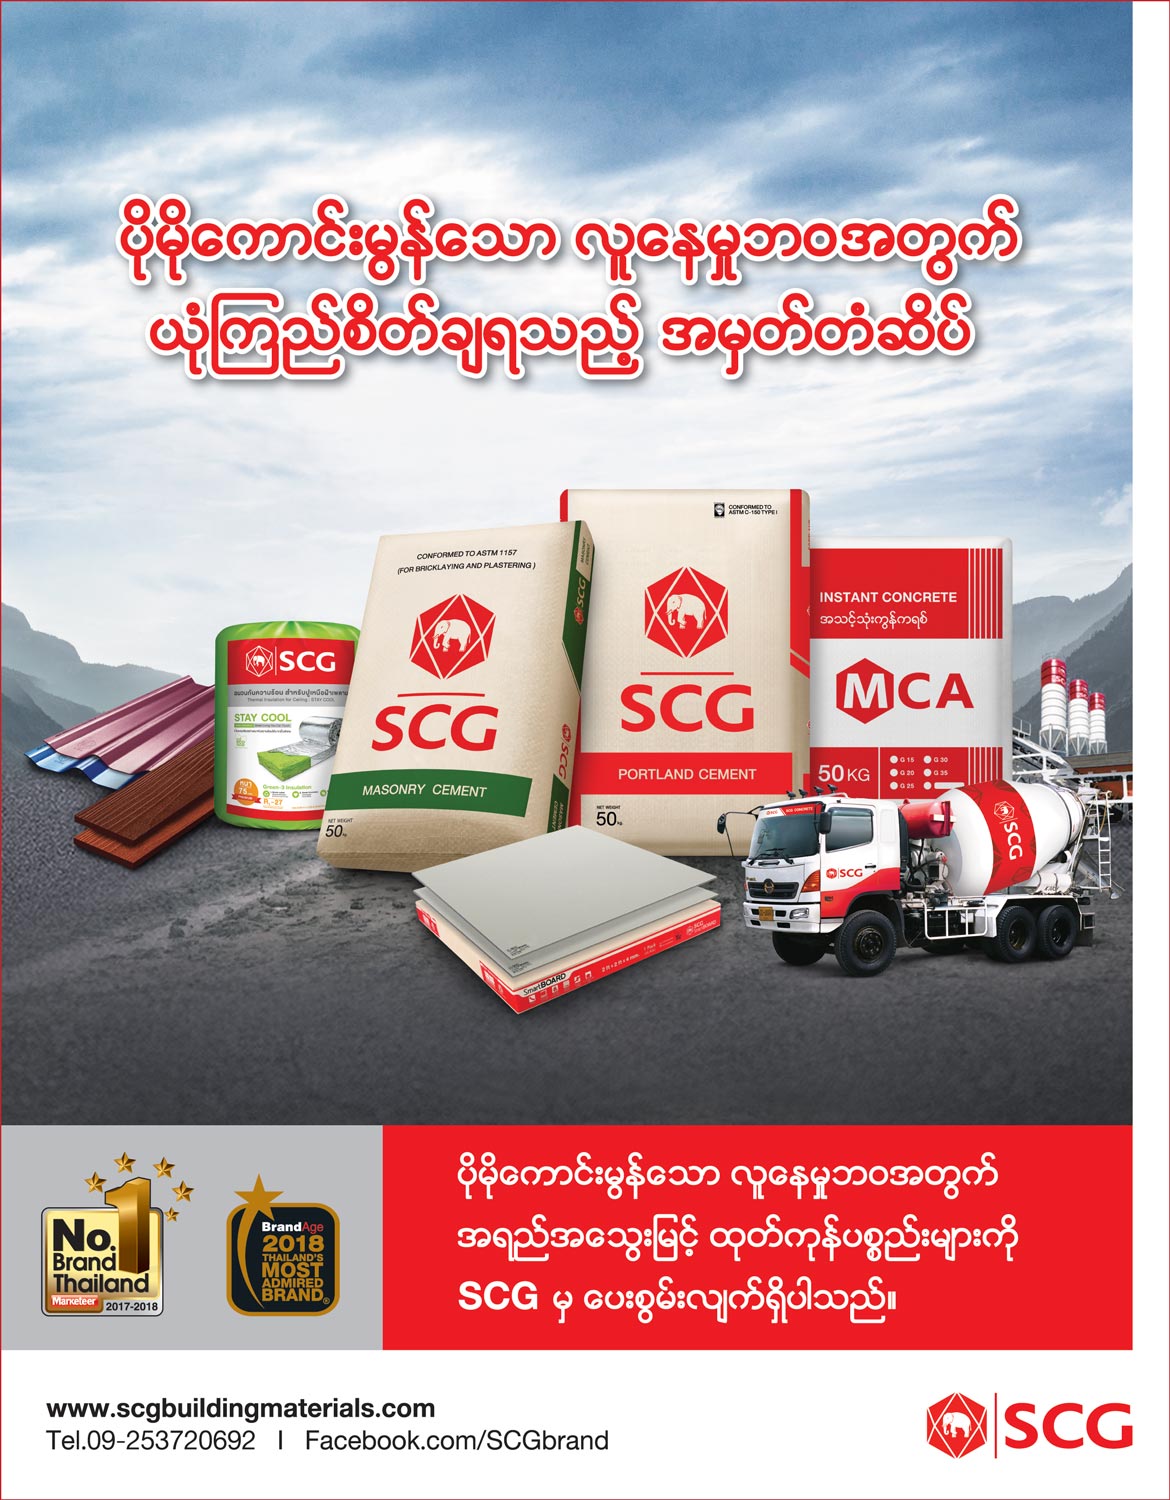 Myanmar-CBM-Services-Co-Ltd_Cement-&-Cement-Factories_(A)_162.jpg